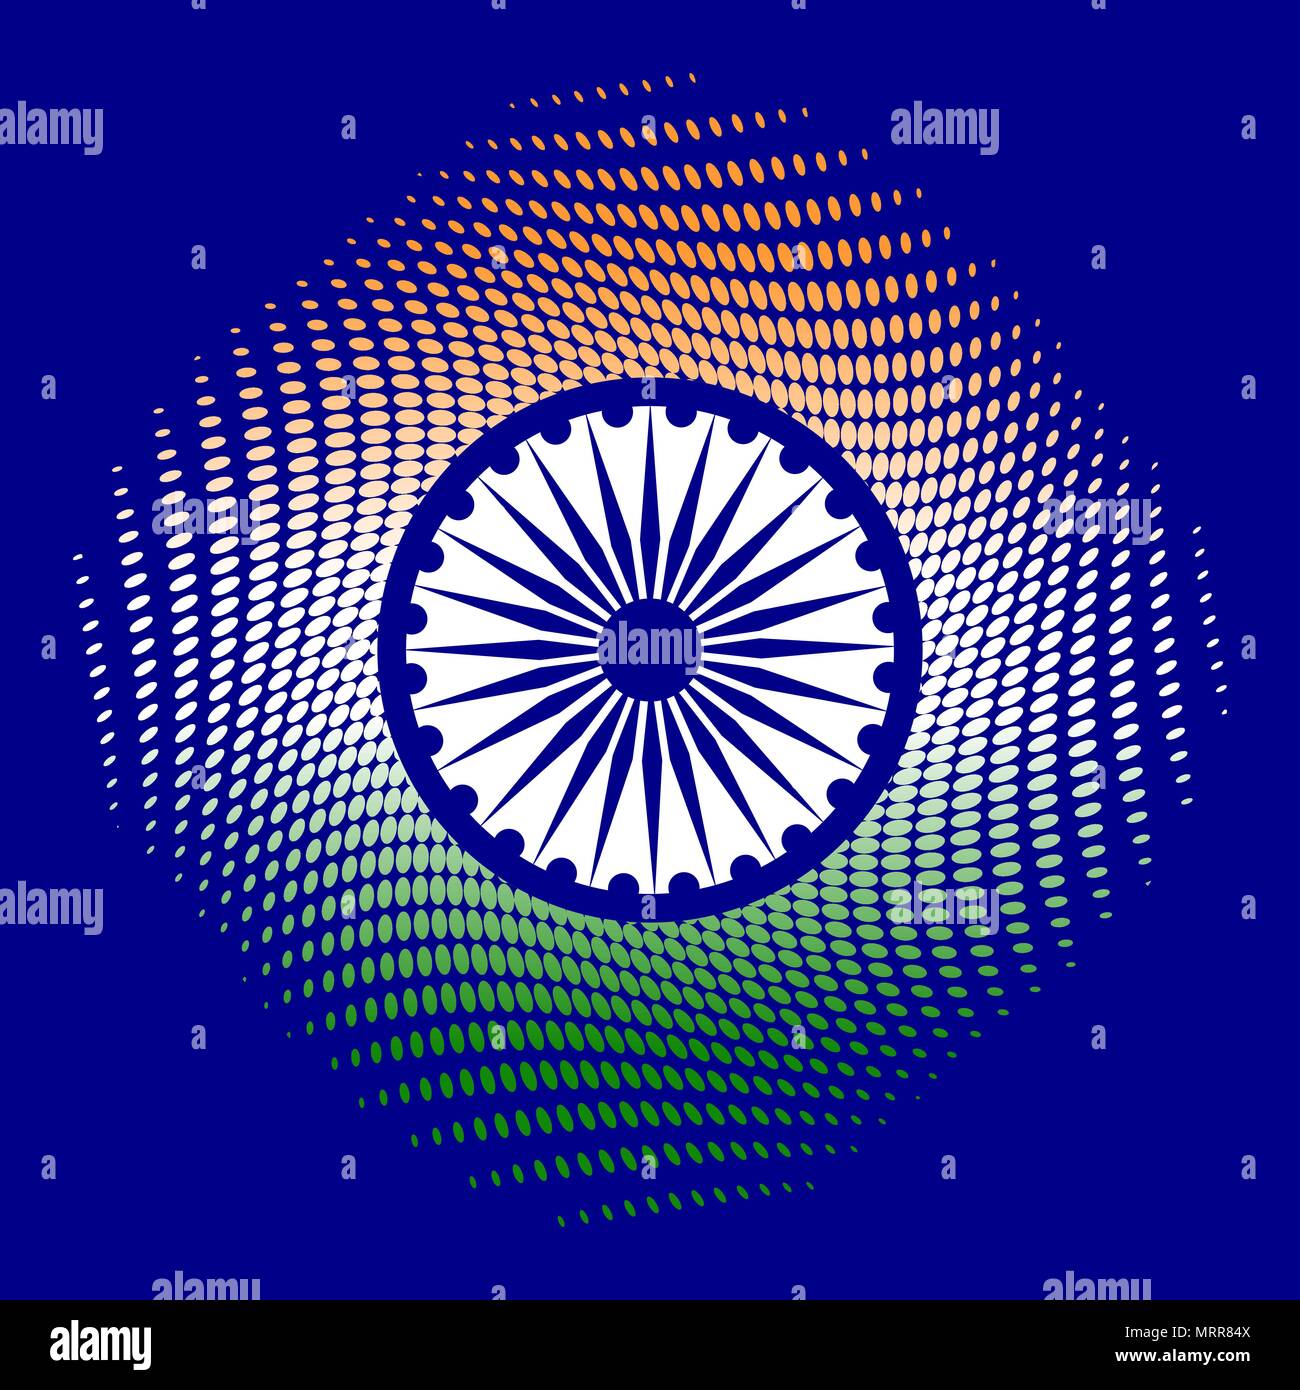 Tag der Unabhängigkeit von Indien. Am 15. August. Die Farben der Flagge ist  Grün, Weiß, Safran. Blaue Rad mit 24 Speichen. Blauer Hintergrund  Stock-Vektorgrafik - Alamy